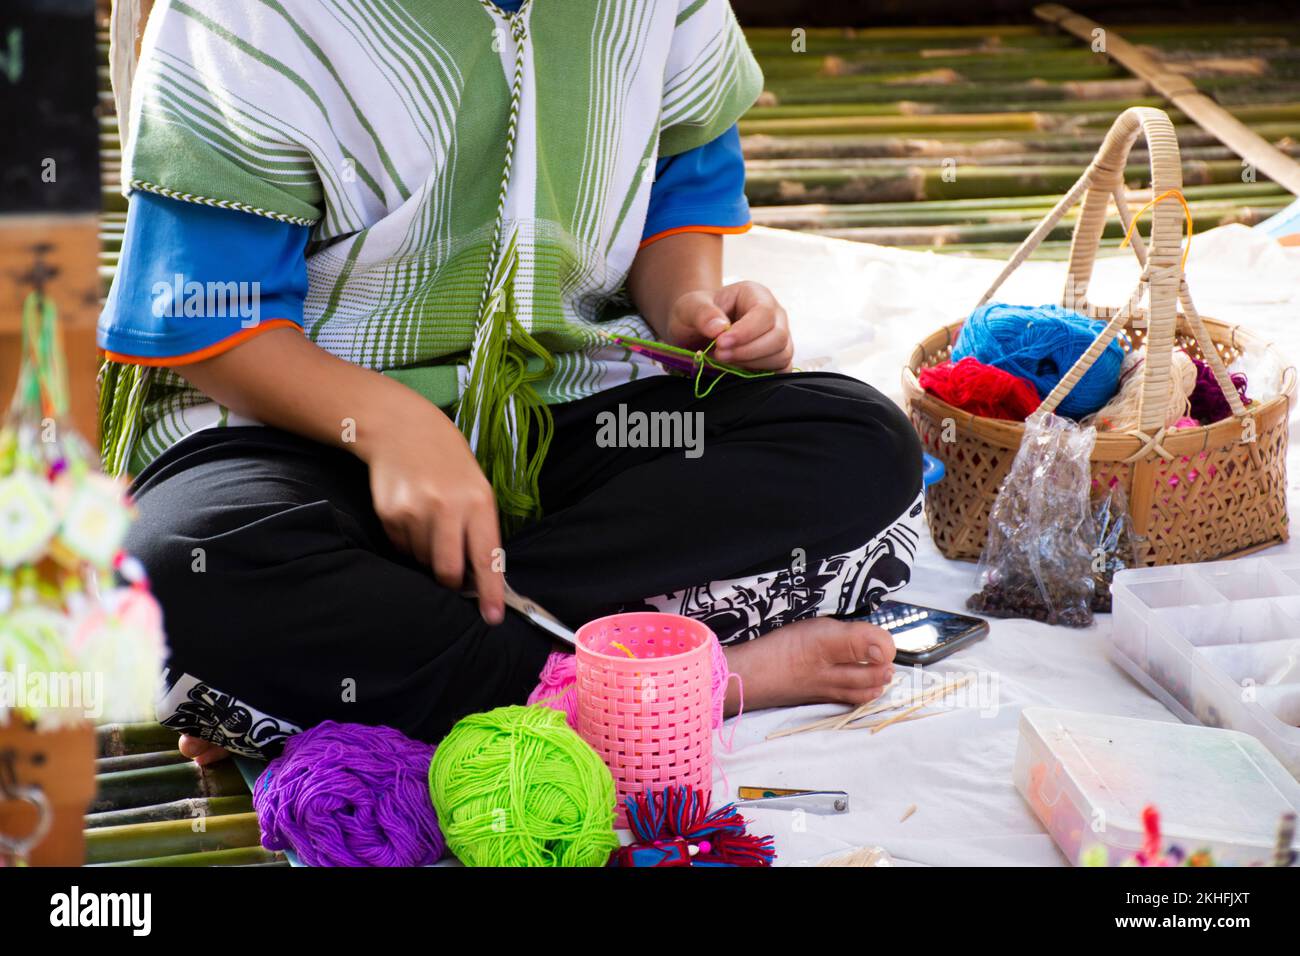 Karen Ethnic Working Stickerei Stricken Garn im lanna Stil in handgemachtem Kunsthandwerksladen in oh poi lokaler Marktbasar für thailänder und ausländische Reisende Stockfoto